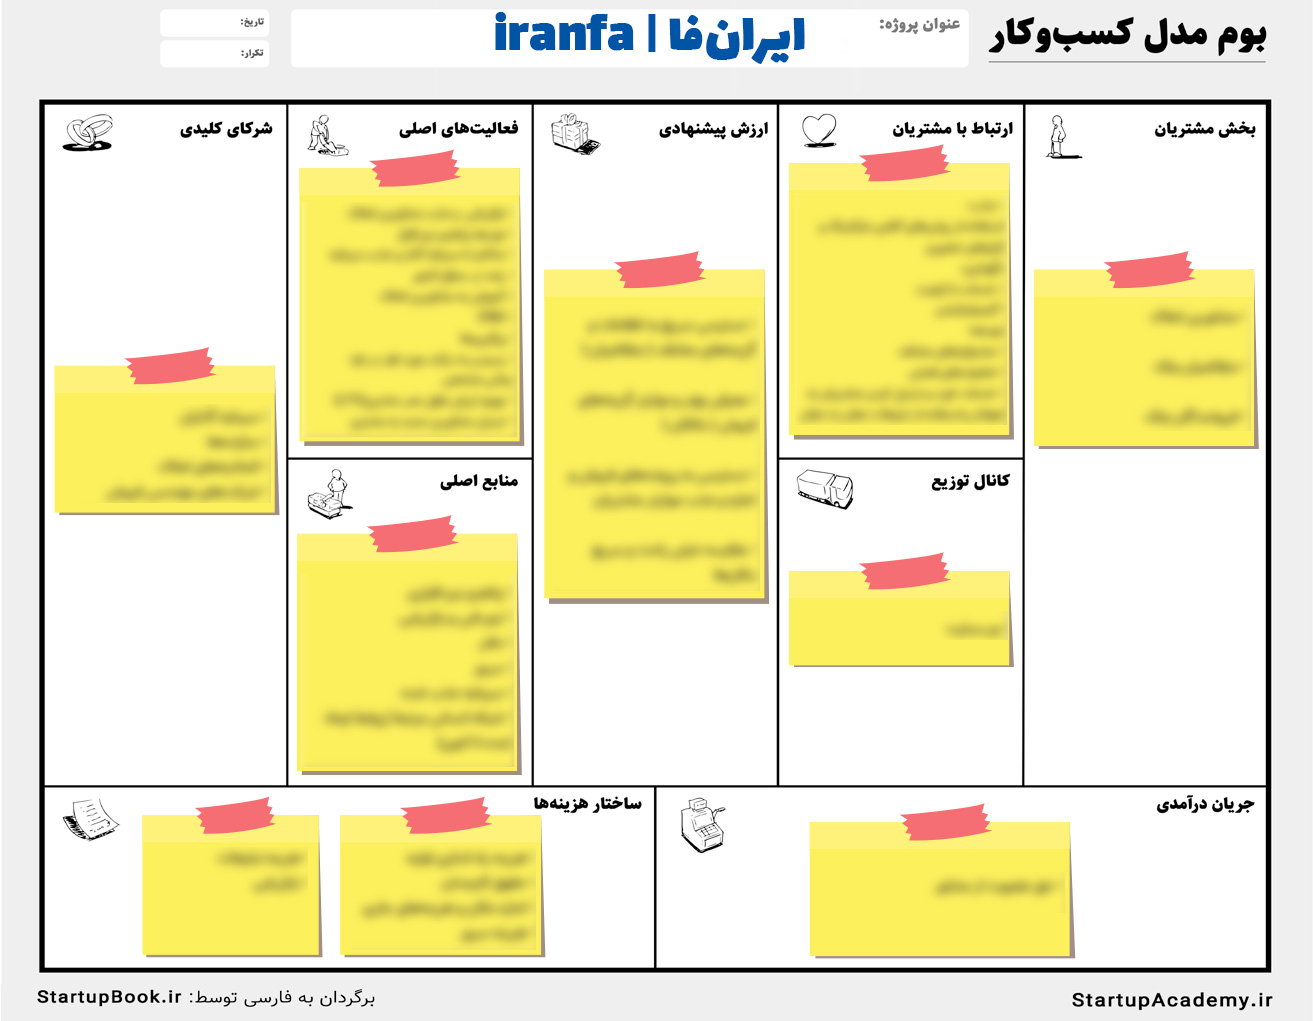 بوم کسب و کار استارتاپ ایران فا